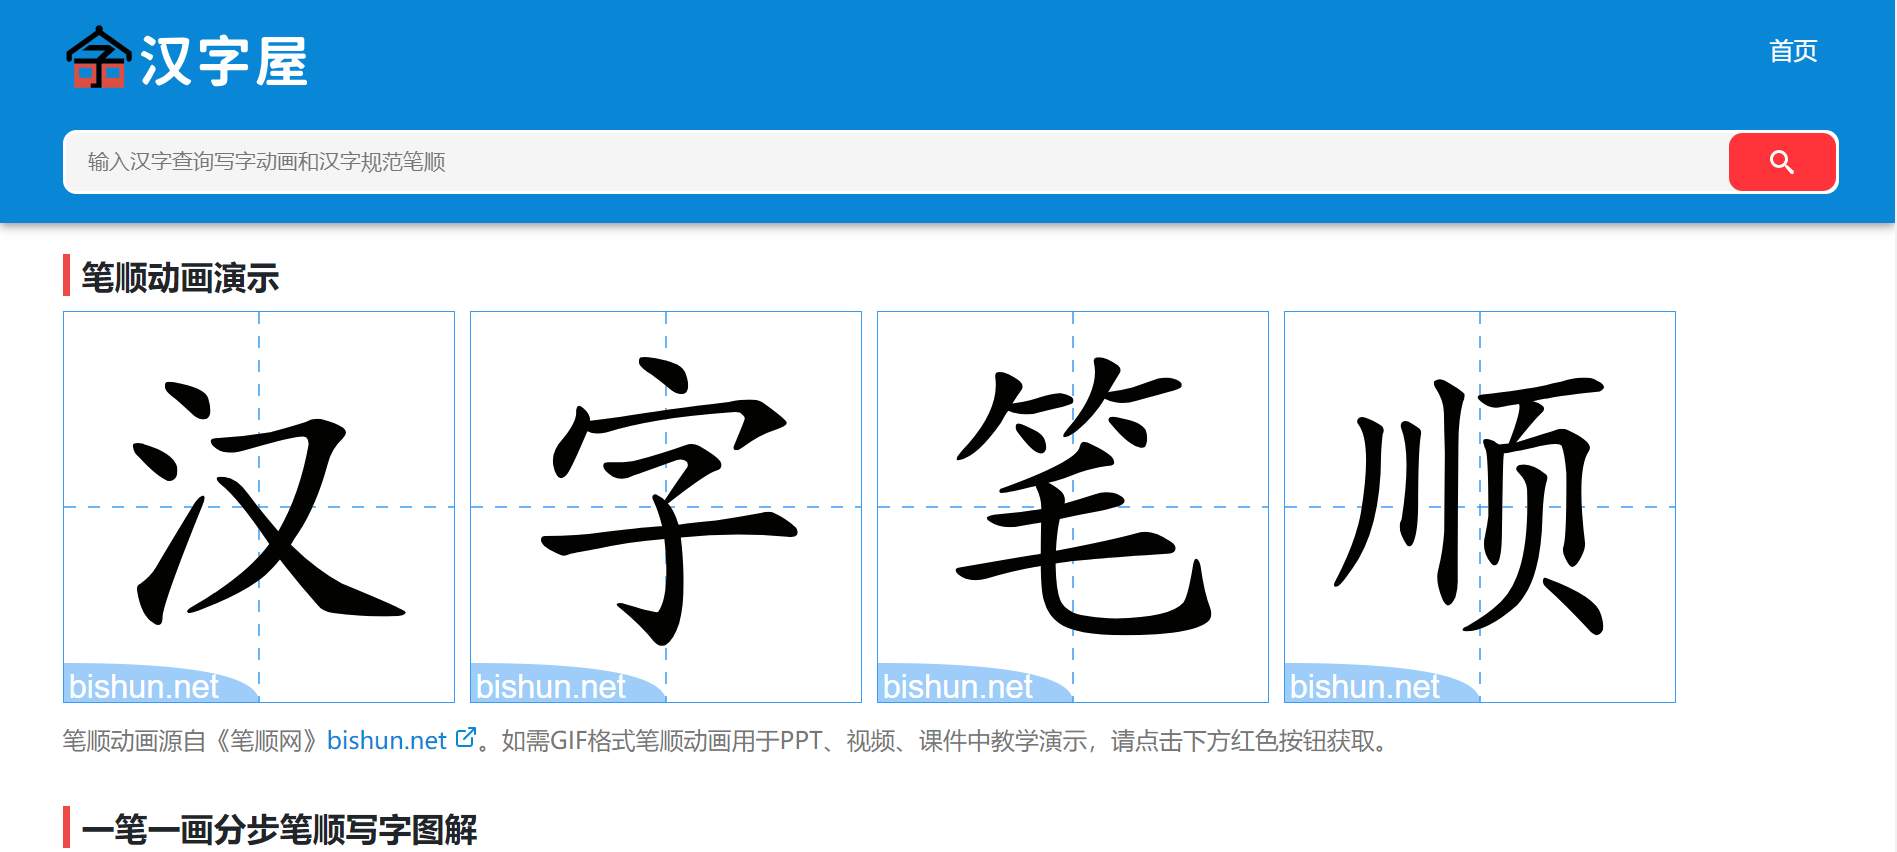 汉字屋 – 汉字笔顺 là một website trực tuyến dùng để tra cứu chiết tự và luyện viết chữ Hán